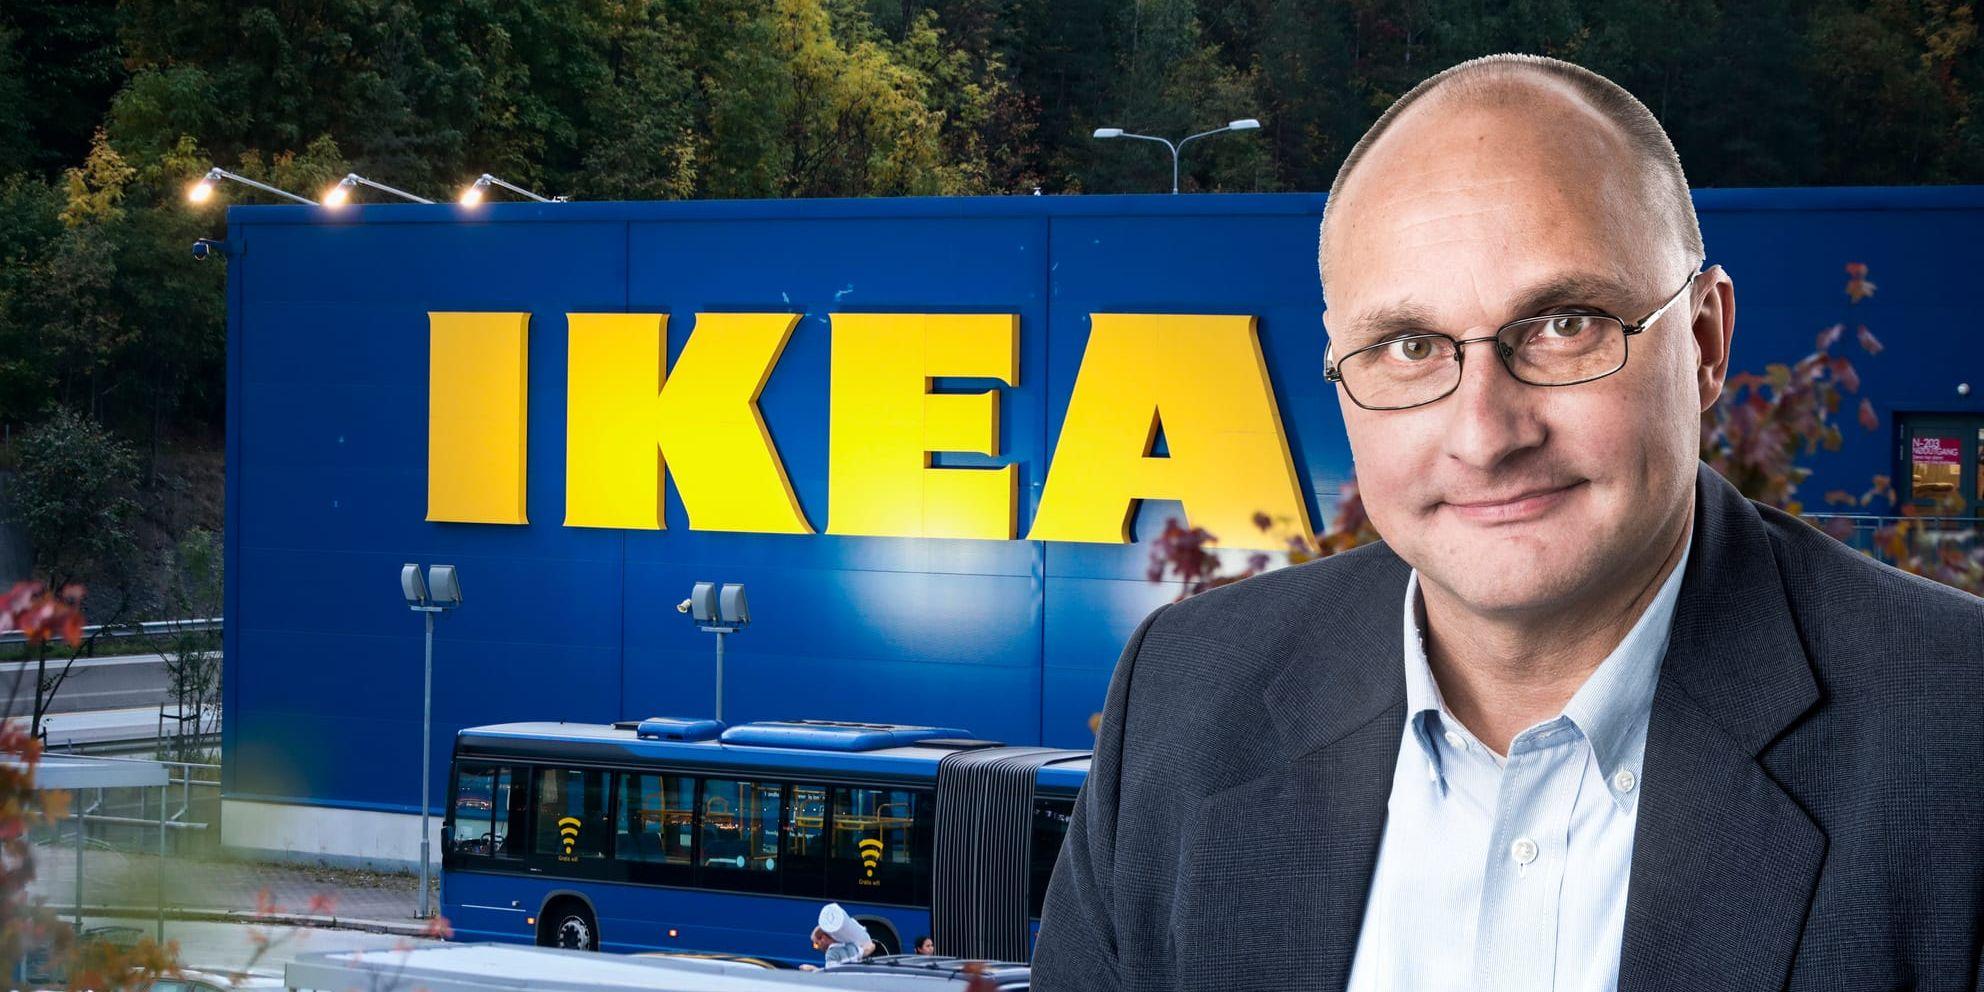 Bara två dagar före handelns absoluta toppdag, Black Friday, levererar Ikea chockbeskedet om stora neddragningar, skriver Torbjörn Isacson.